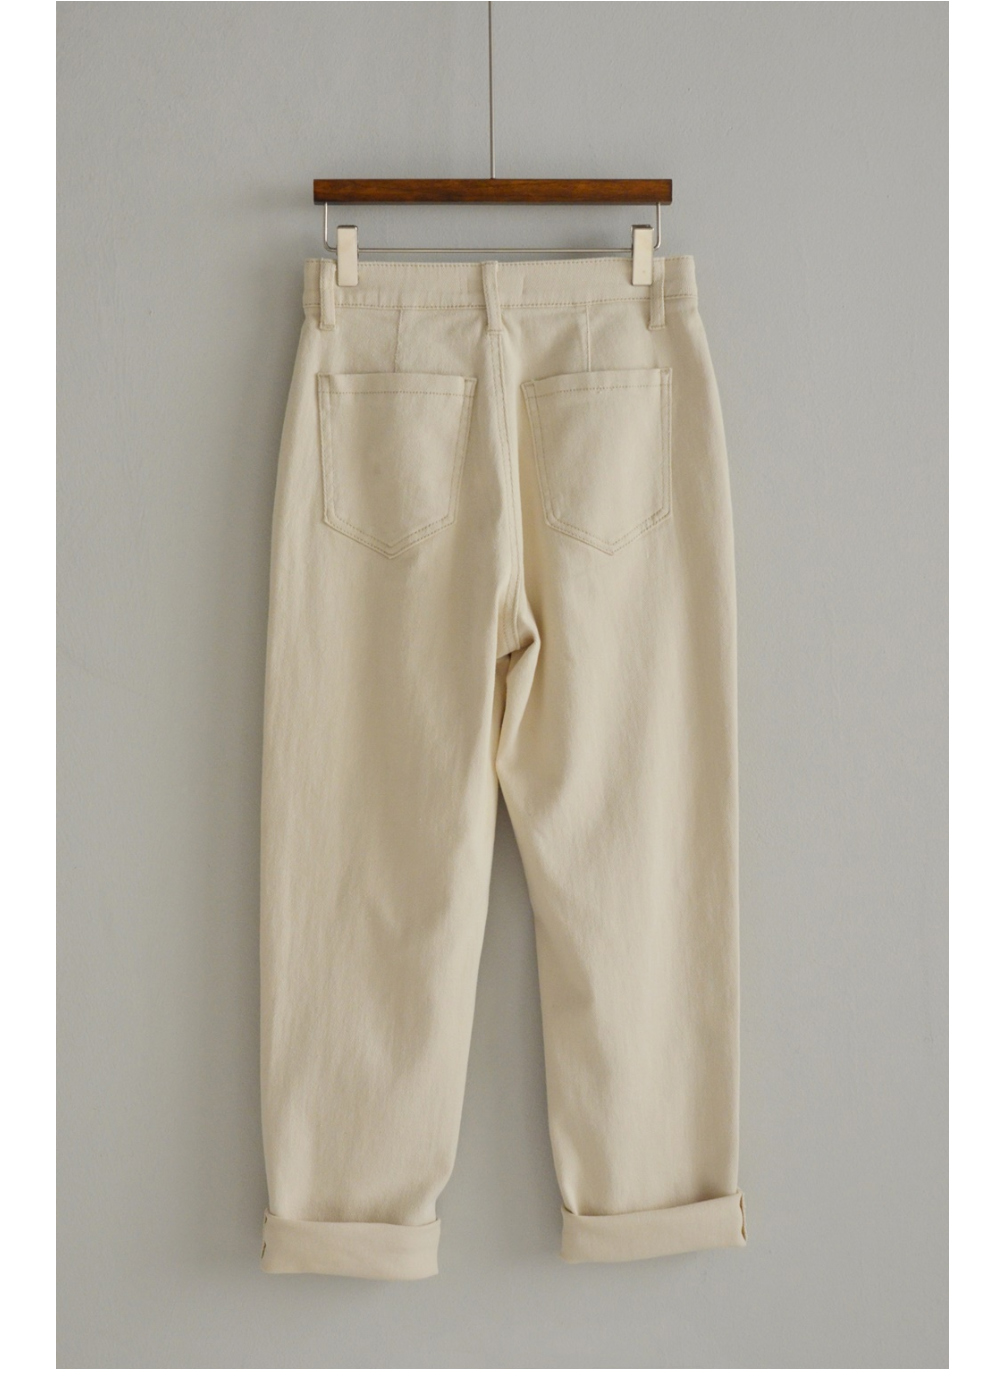 Pants cream color image-S47L1